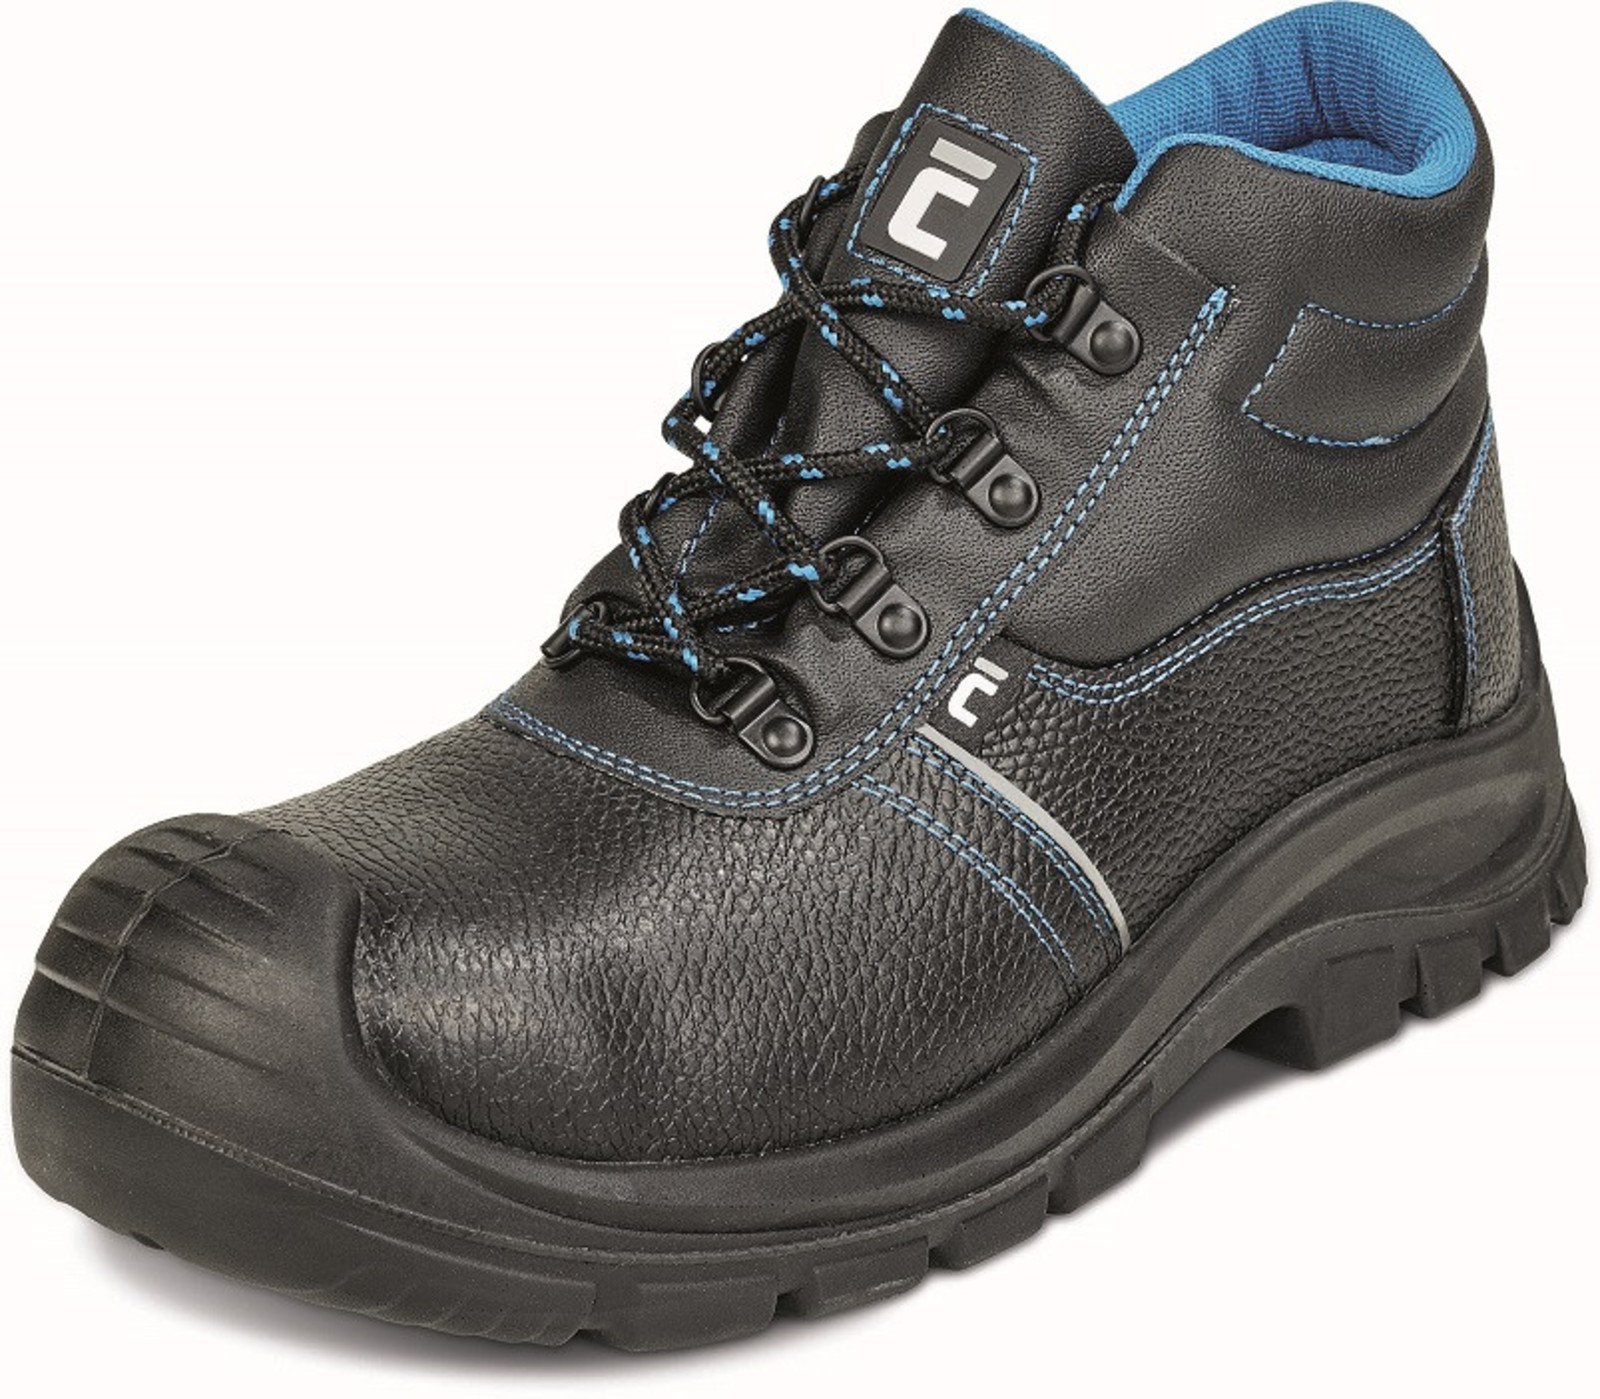 Bezpečnostná obuv Raven XT S1 - veľkosť: 40, farba: čierna